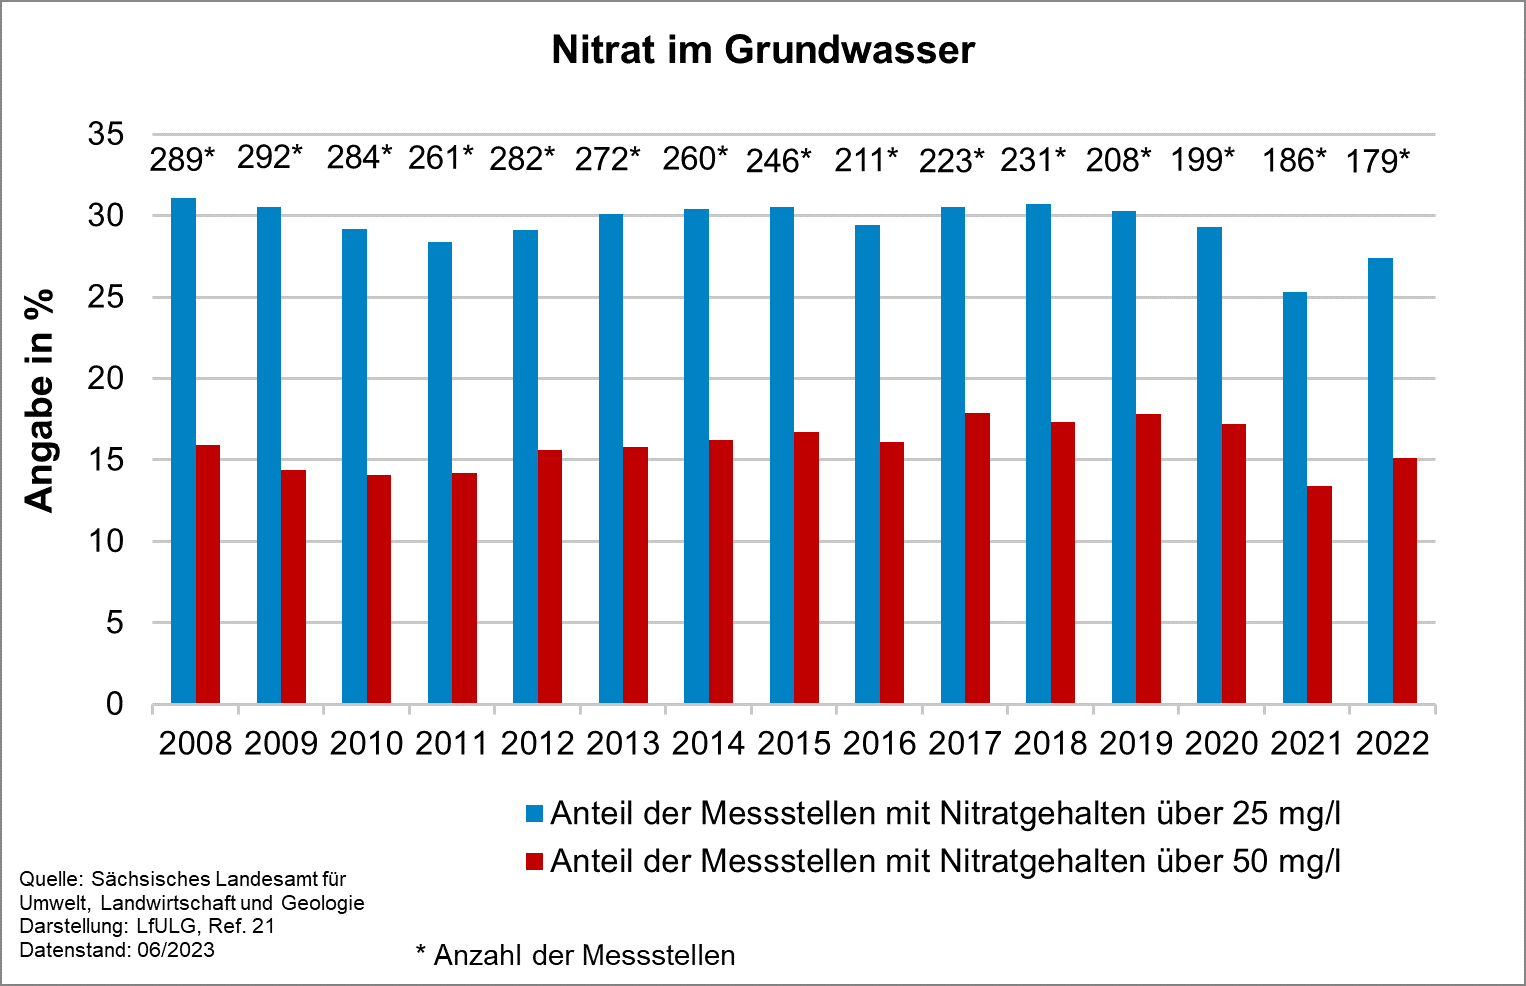 Die Grafik zeigt die Entwicklung des Indikators Nitrat im Grundwasser für die Jahre 2008 bis 20212. Der Anteil der Messstellen mit Nitratgehalten über 50 Milligramm pro Liter schwankt über den gesamten Zeitraum zwischen 14 und 18 Prozent.